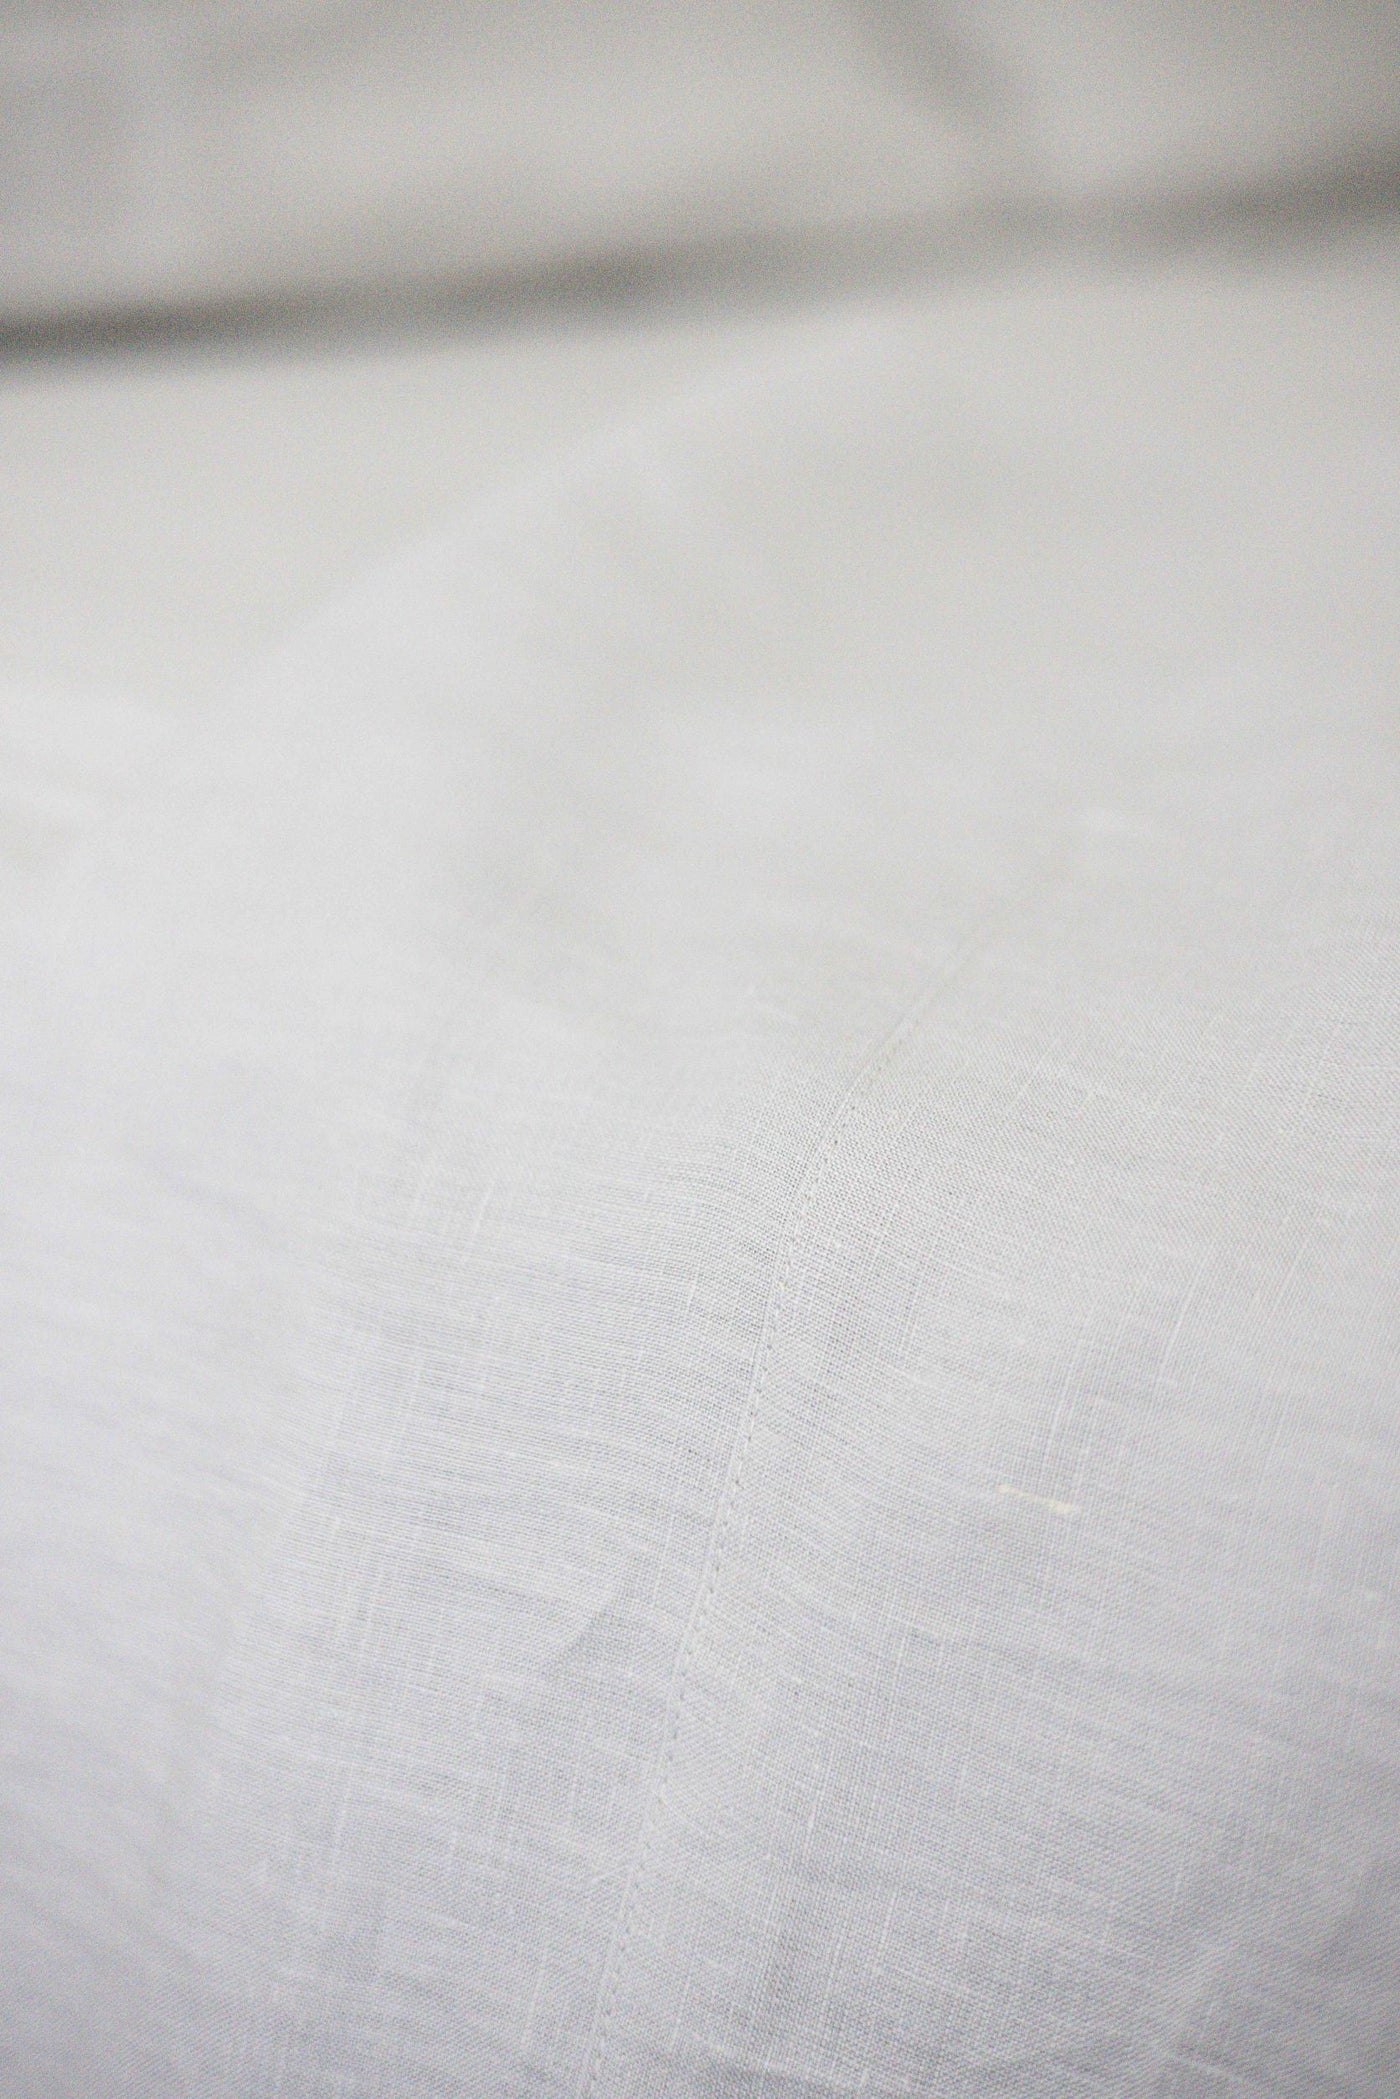 Flax Linen Flat Sheet